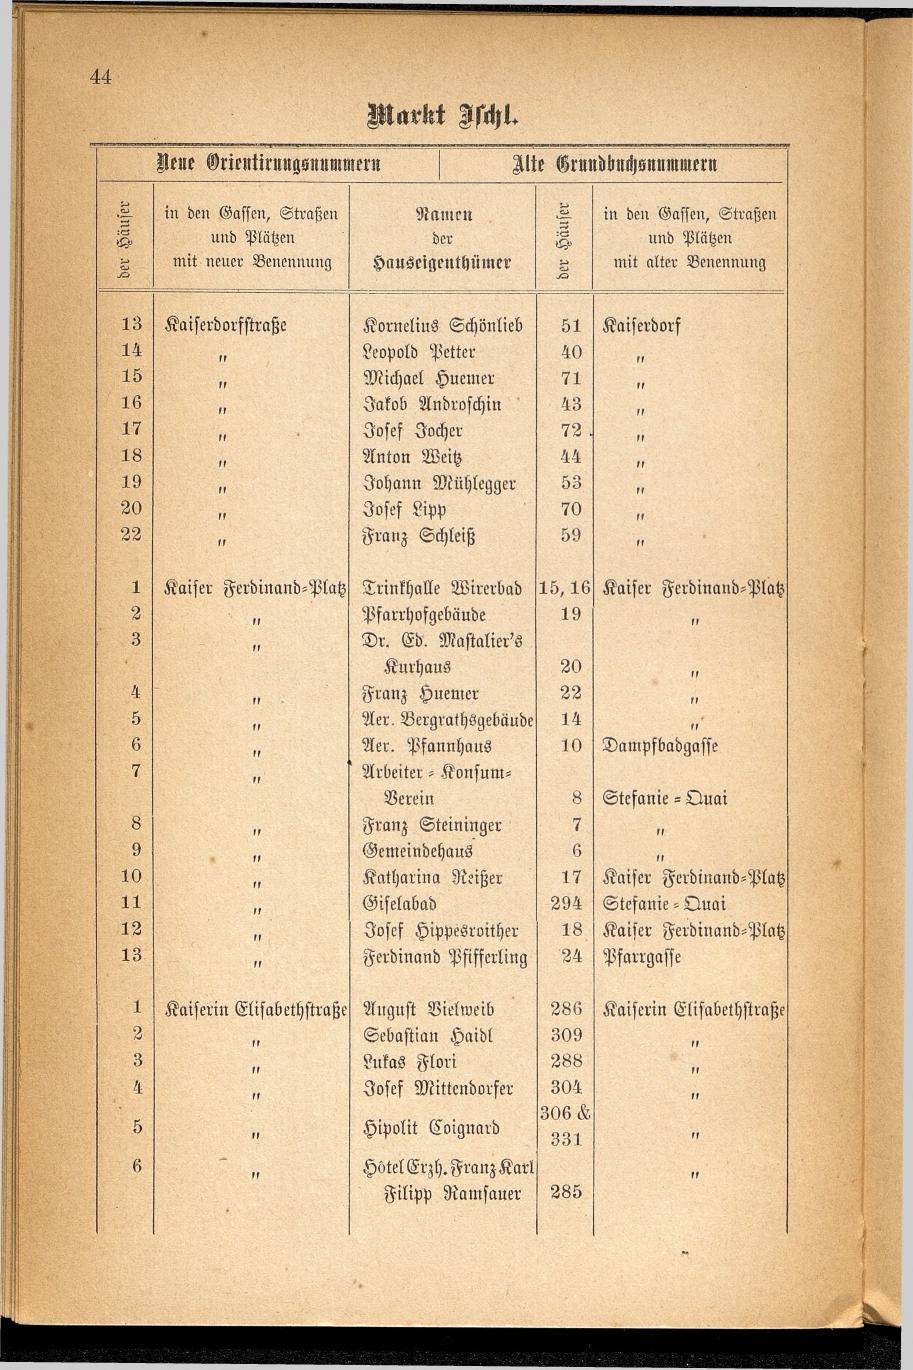 Häuser-Verzeichnis des Marktes und Kurortes Ischl nach den neuen Orientirungsnummern 1881 - Seite 48